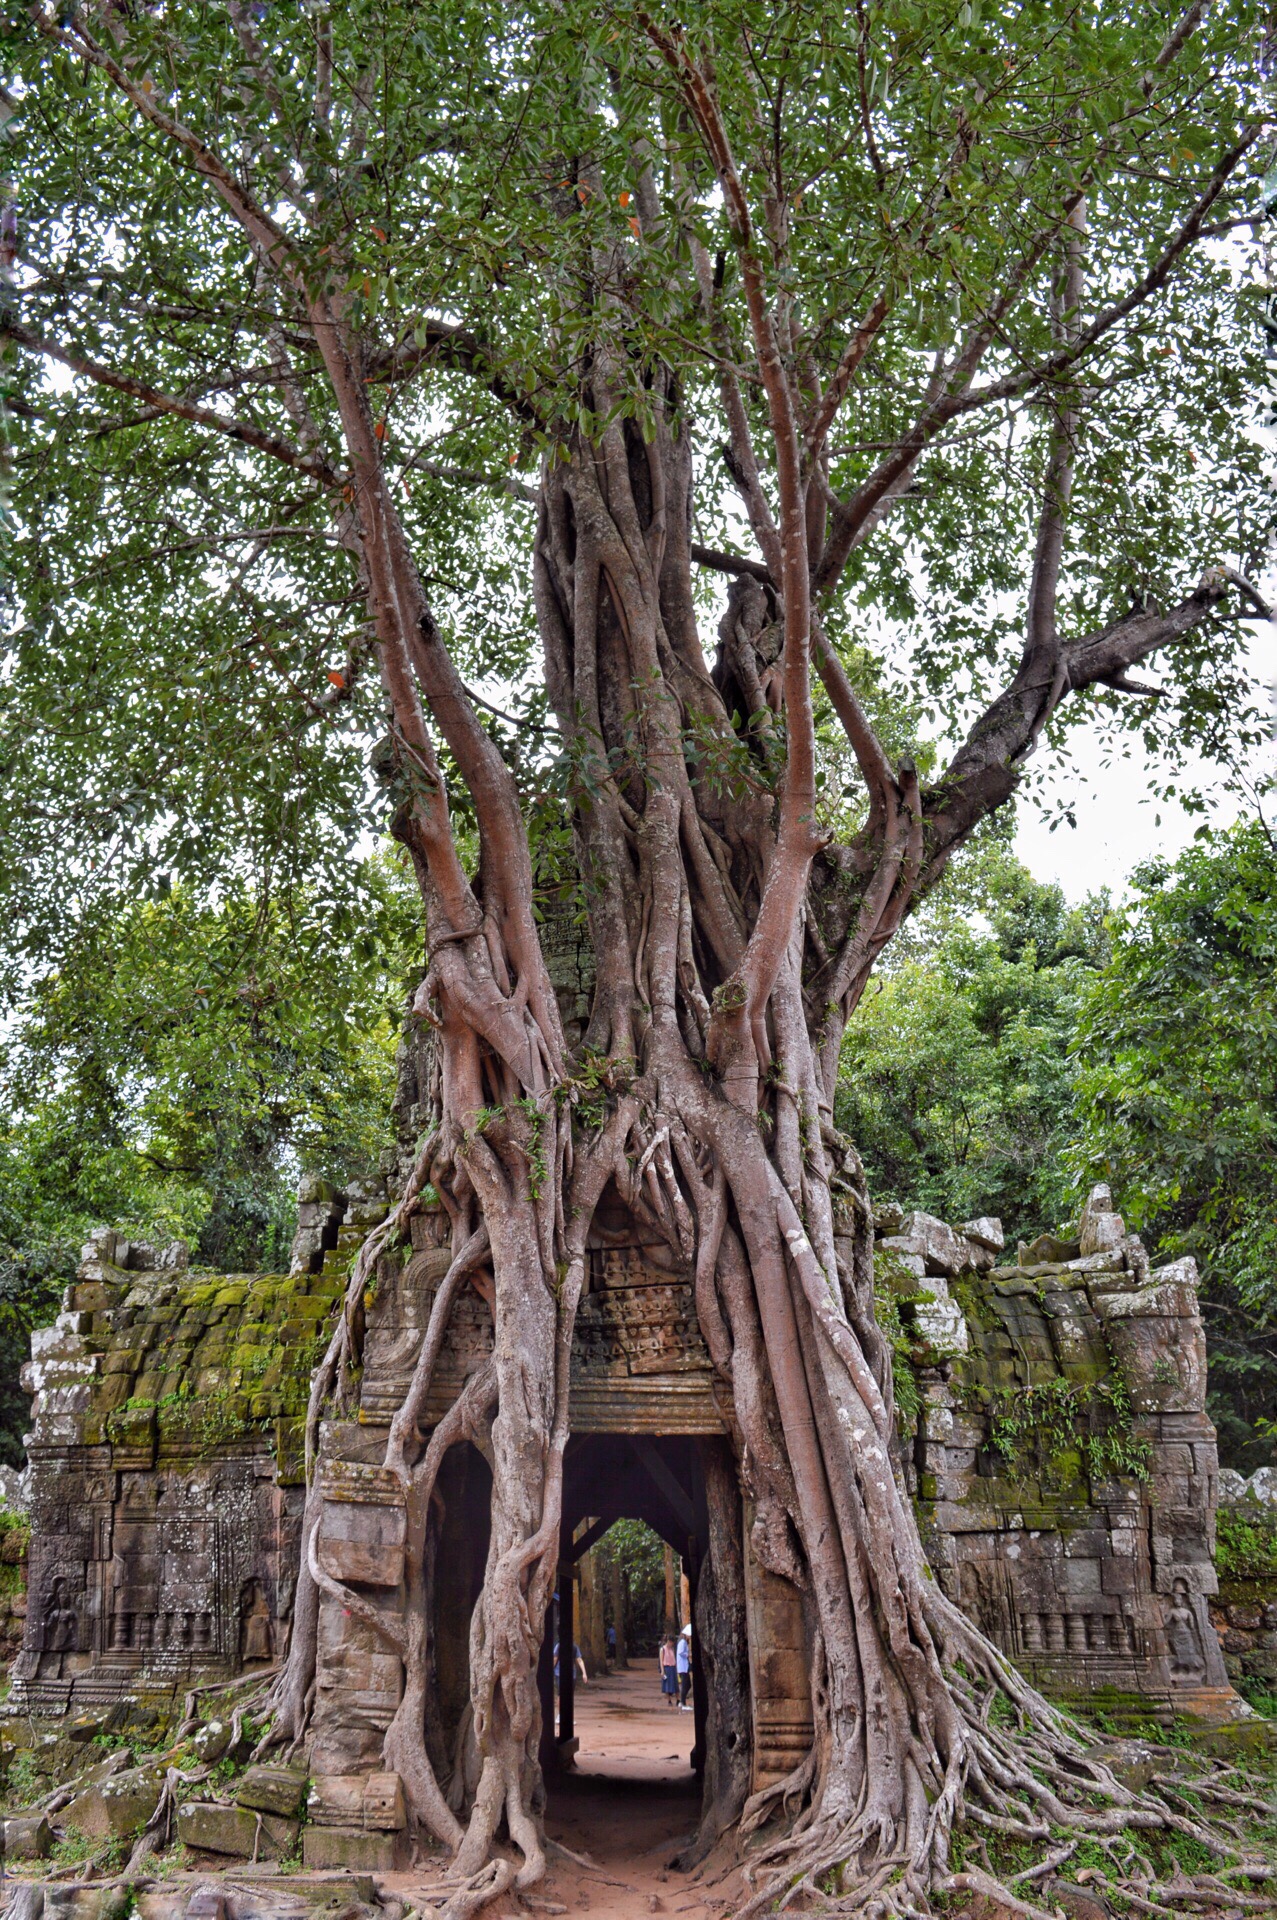 塔逊寺，东塔门是整座寺庙的点睛之处，整座门被一个大树的根系完全覆盖，寺门与树融为一体，与门后的四面佛